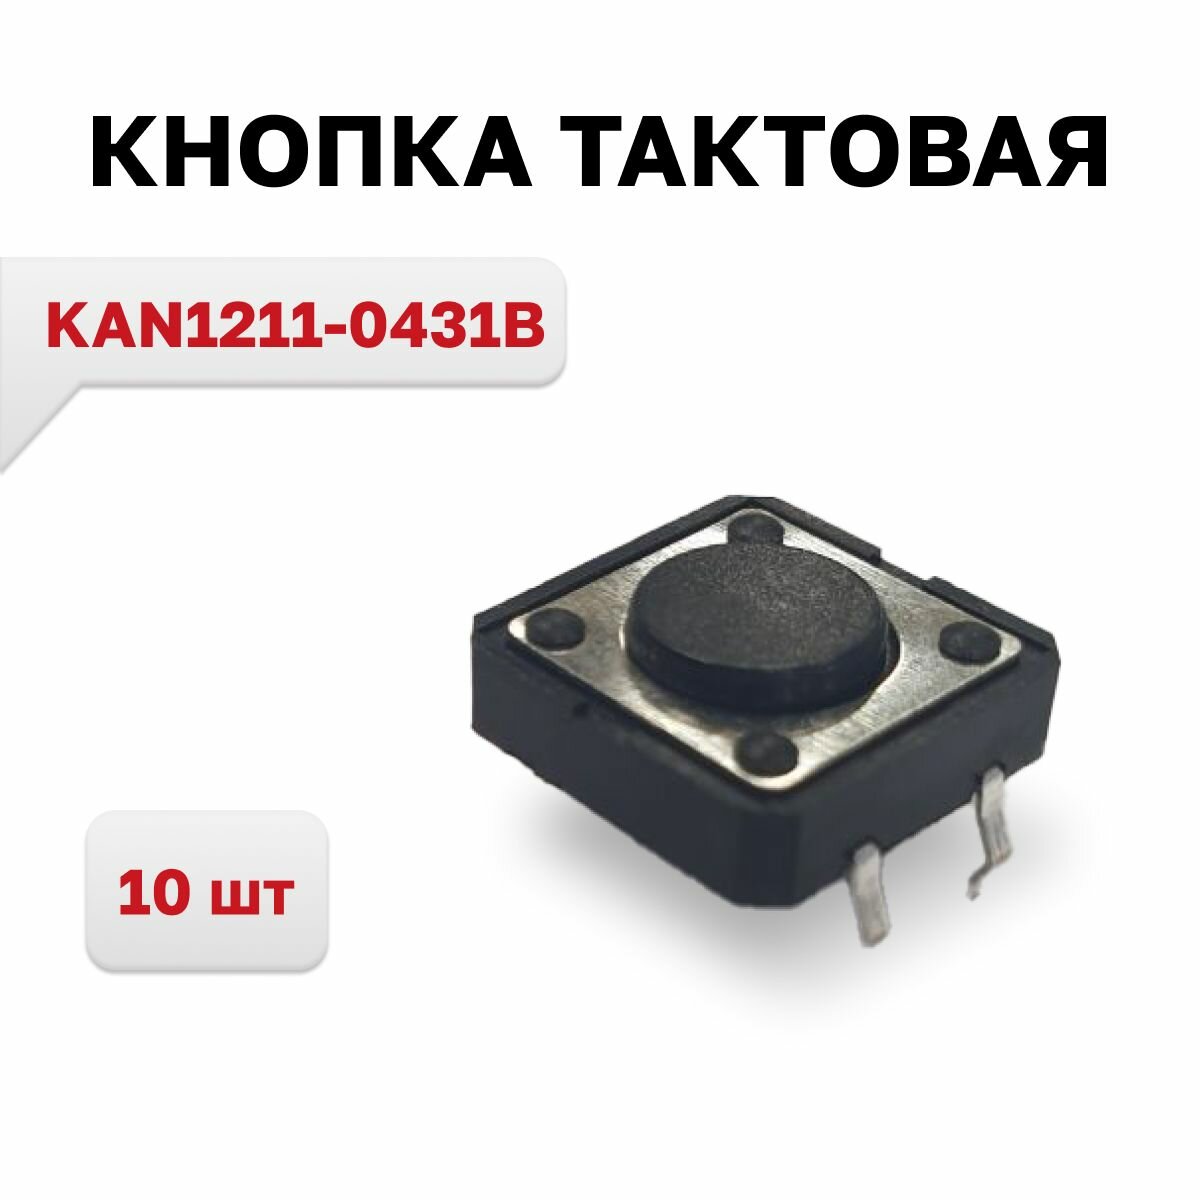 KAN1211-0431B кнопка тактовая 10 шт.